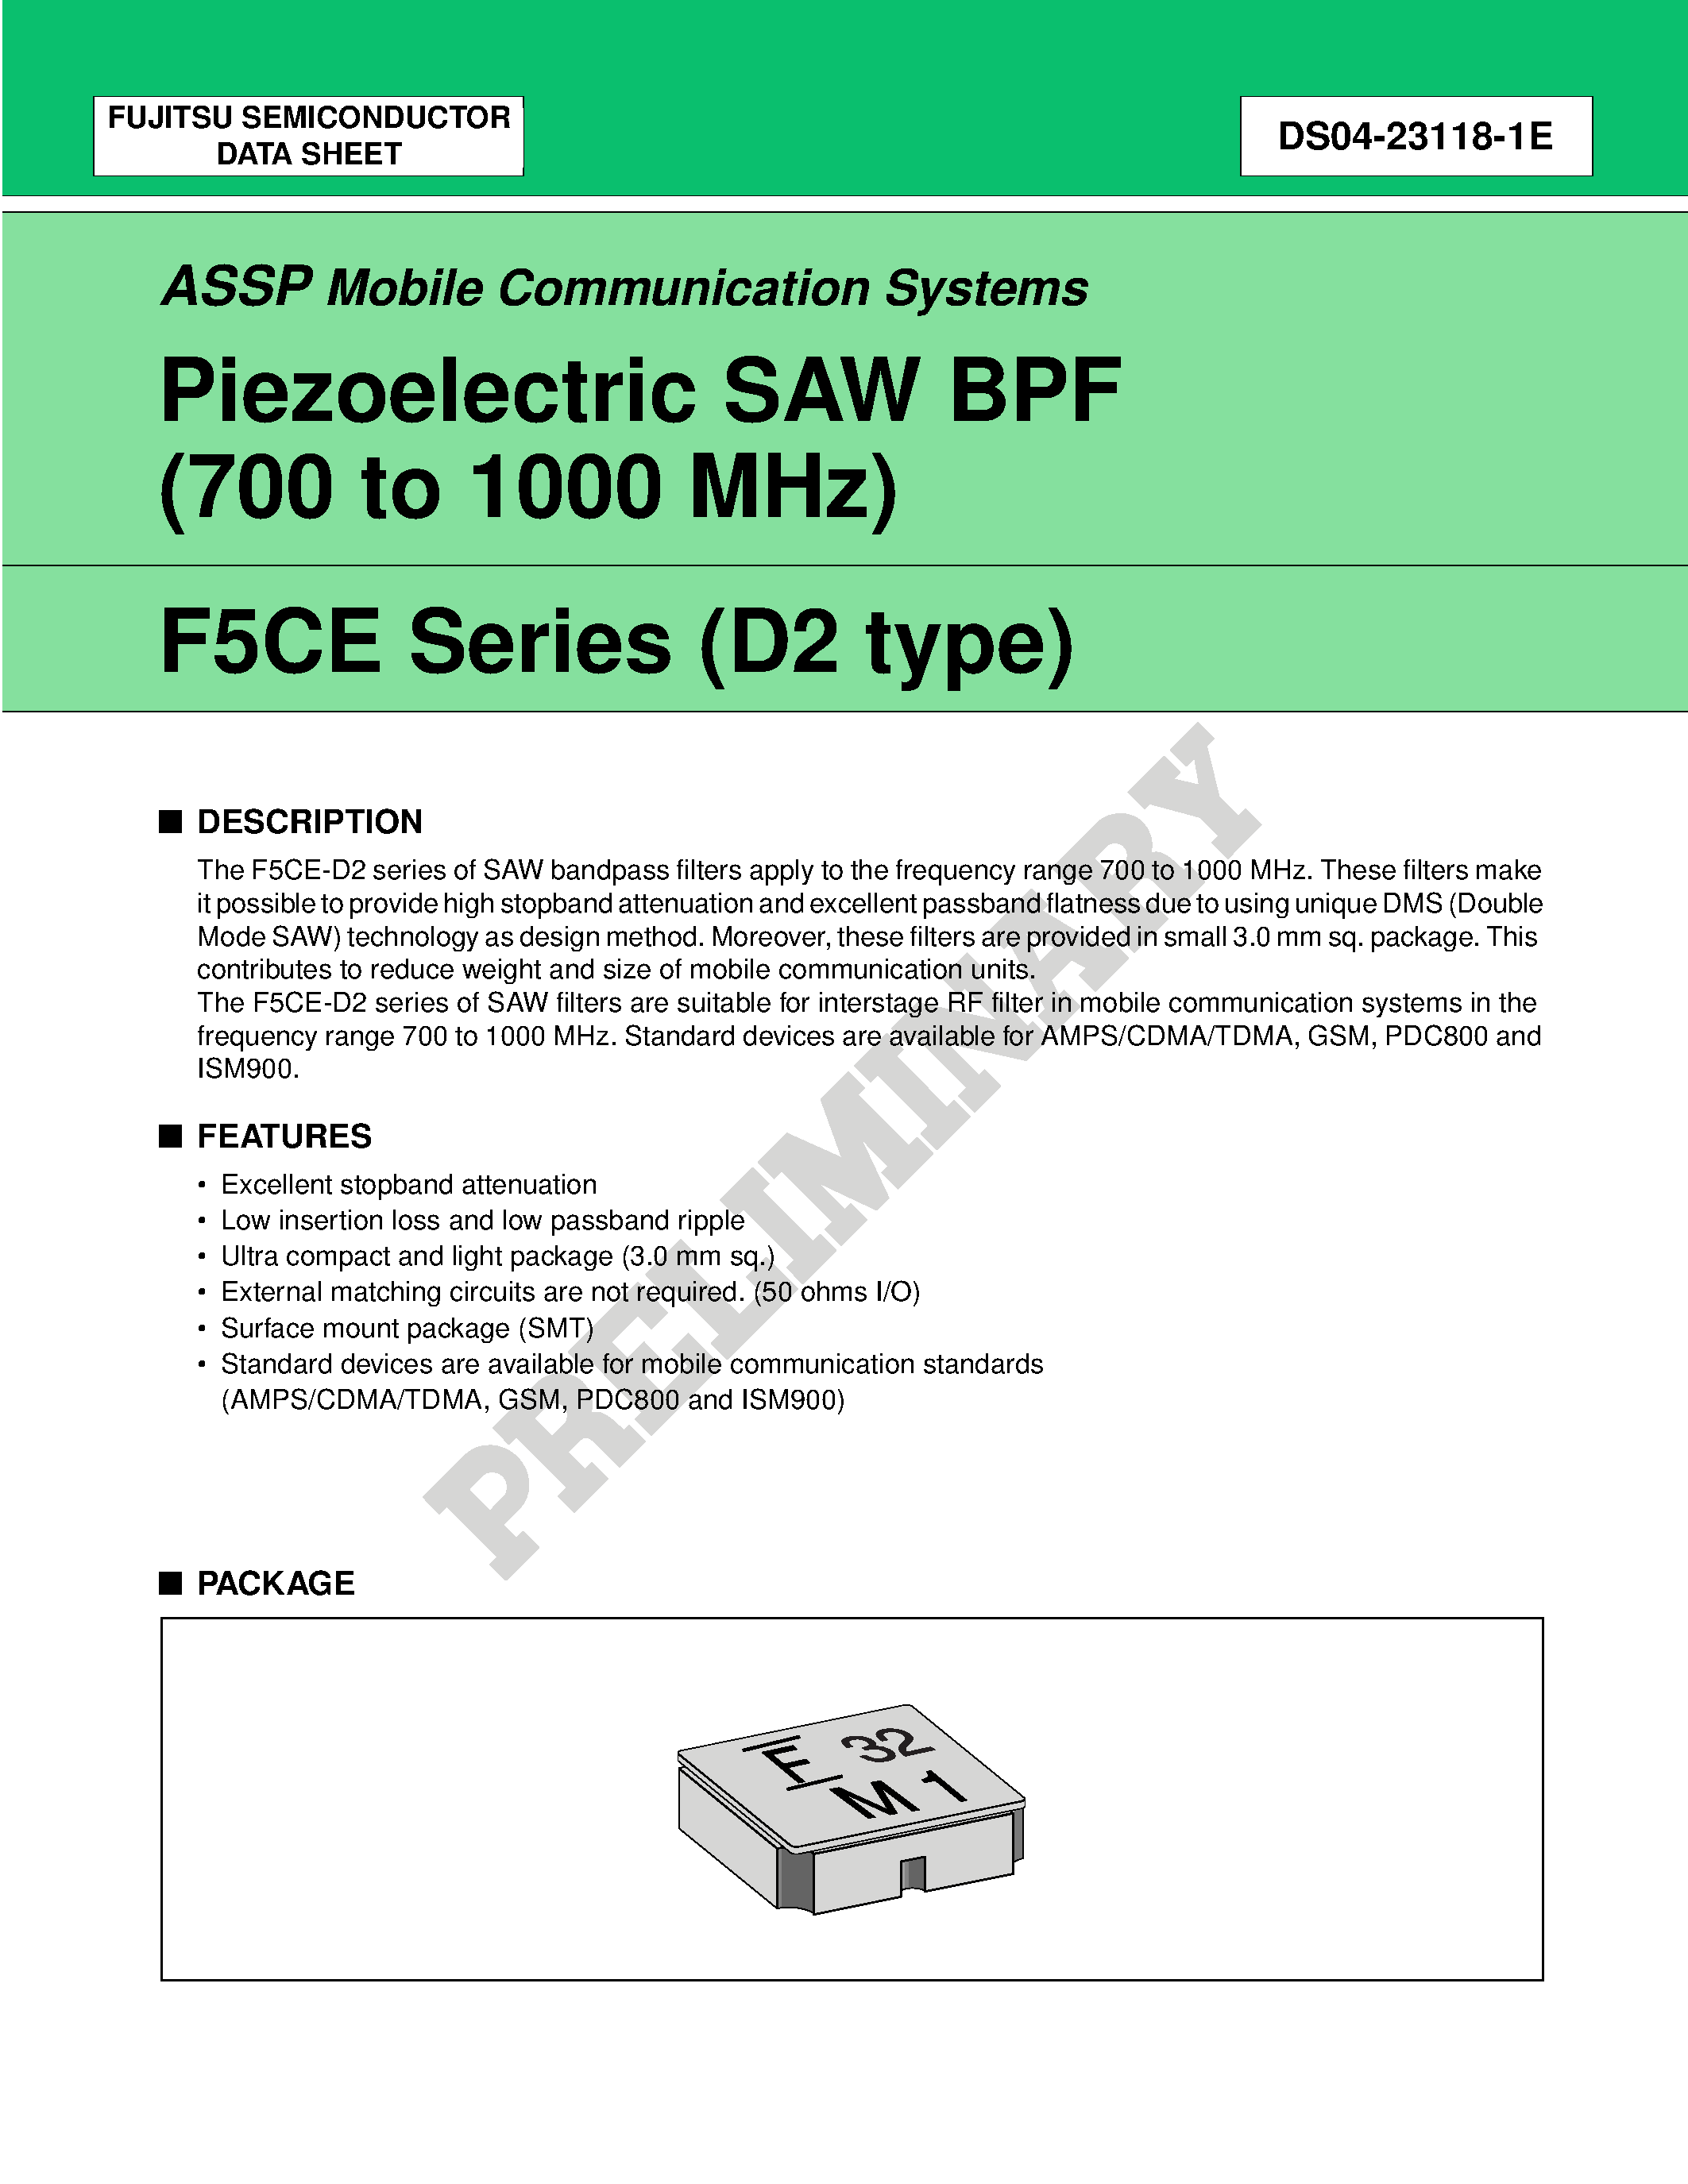 Datasheet FAR-F5CE-942M50-K237-U - Piezoelectric SAW BPF (700 to 1700 MHz) page 1